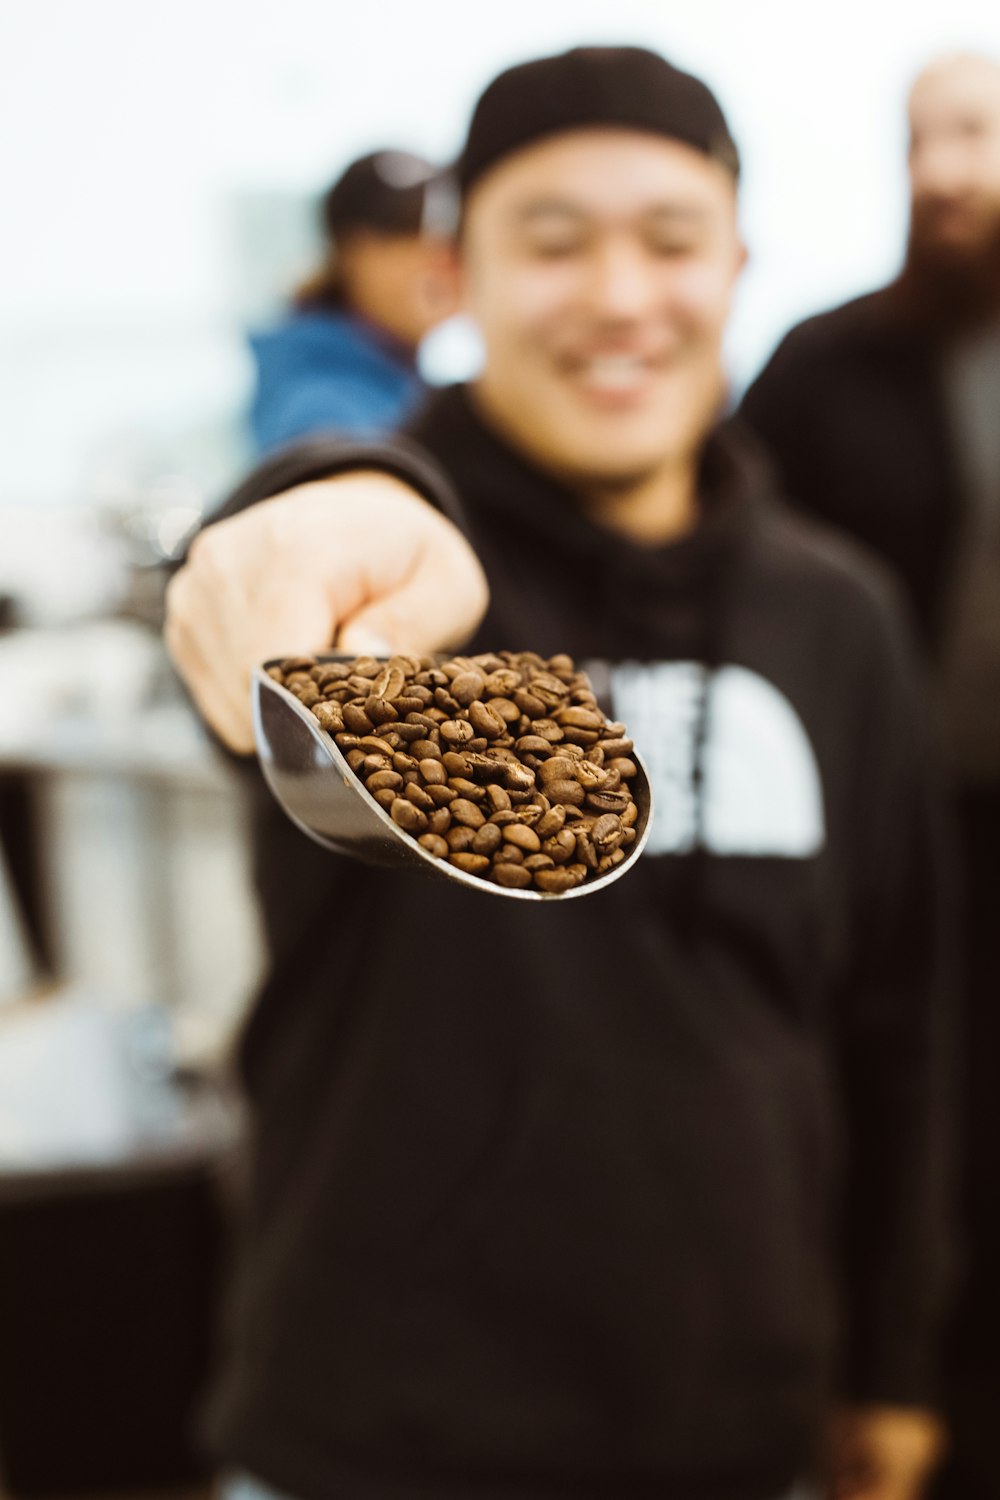 Mann im schwarzen Kapuzenpullover zeigt Schaufel Kaffeebohnen